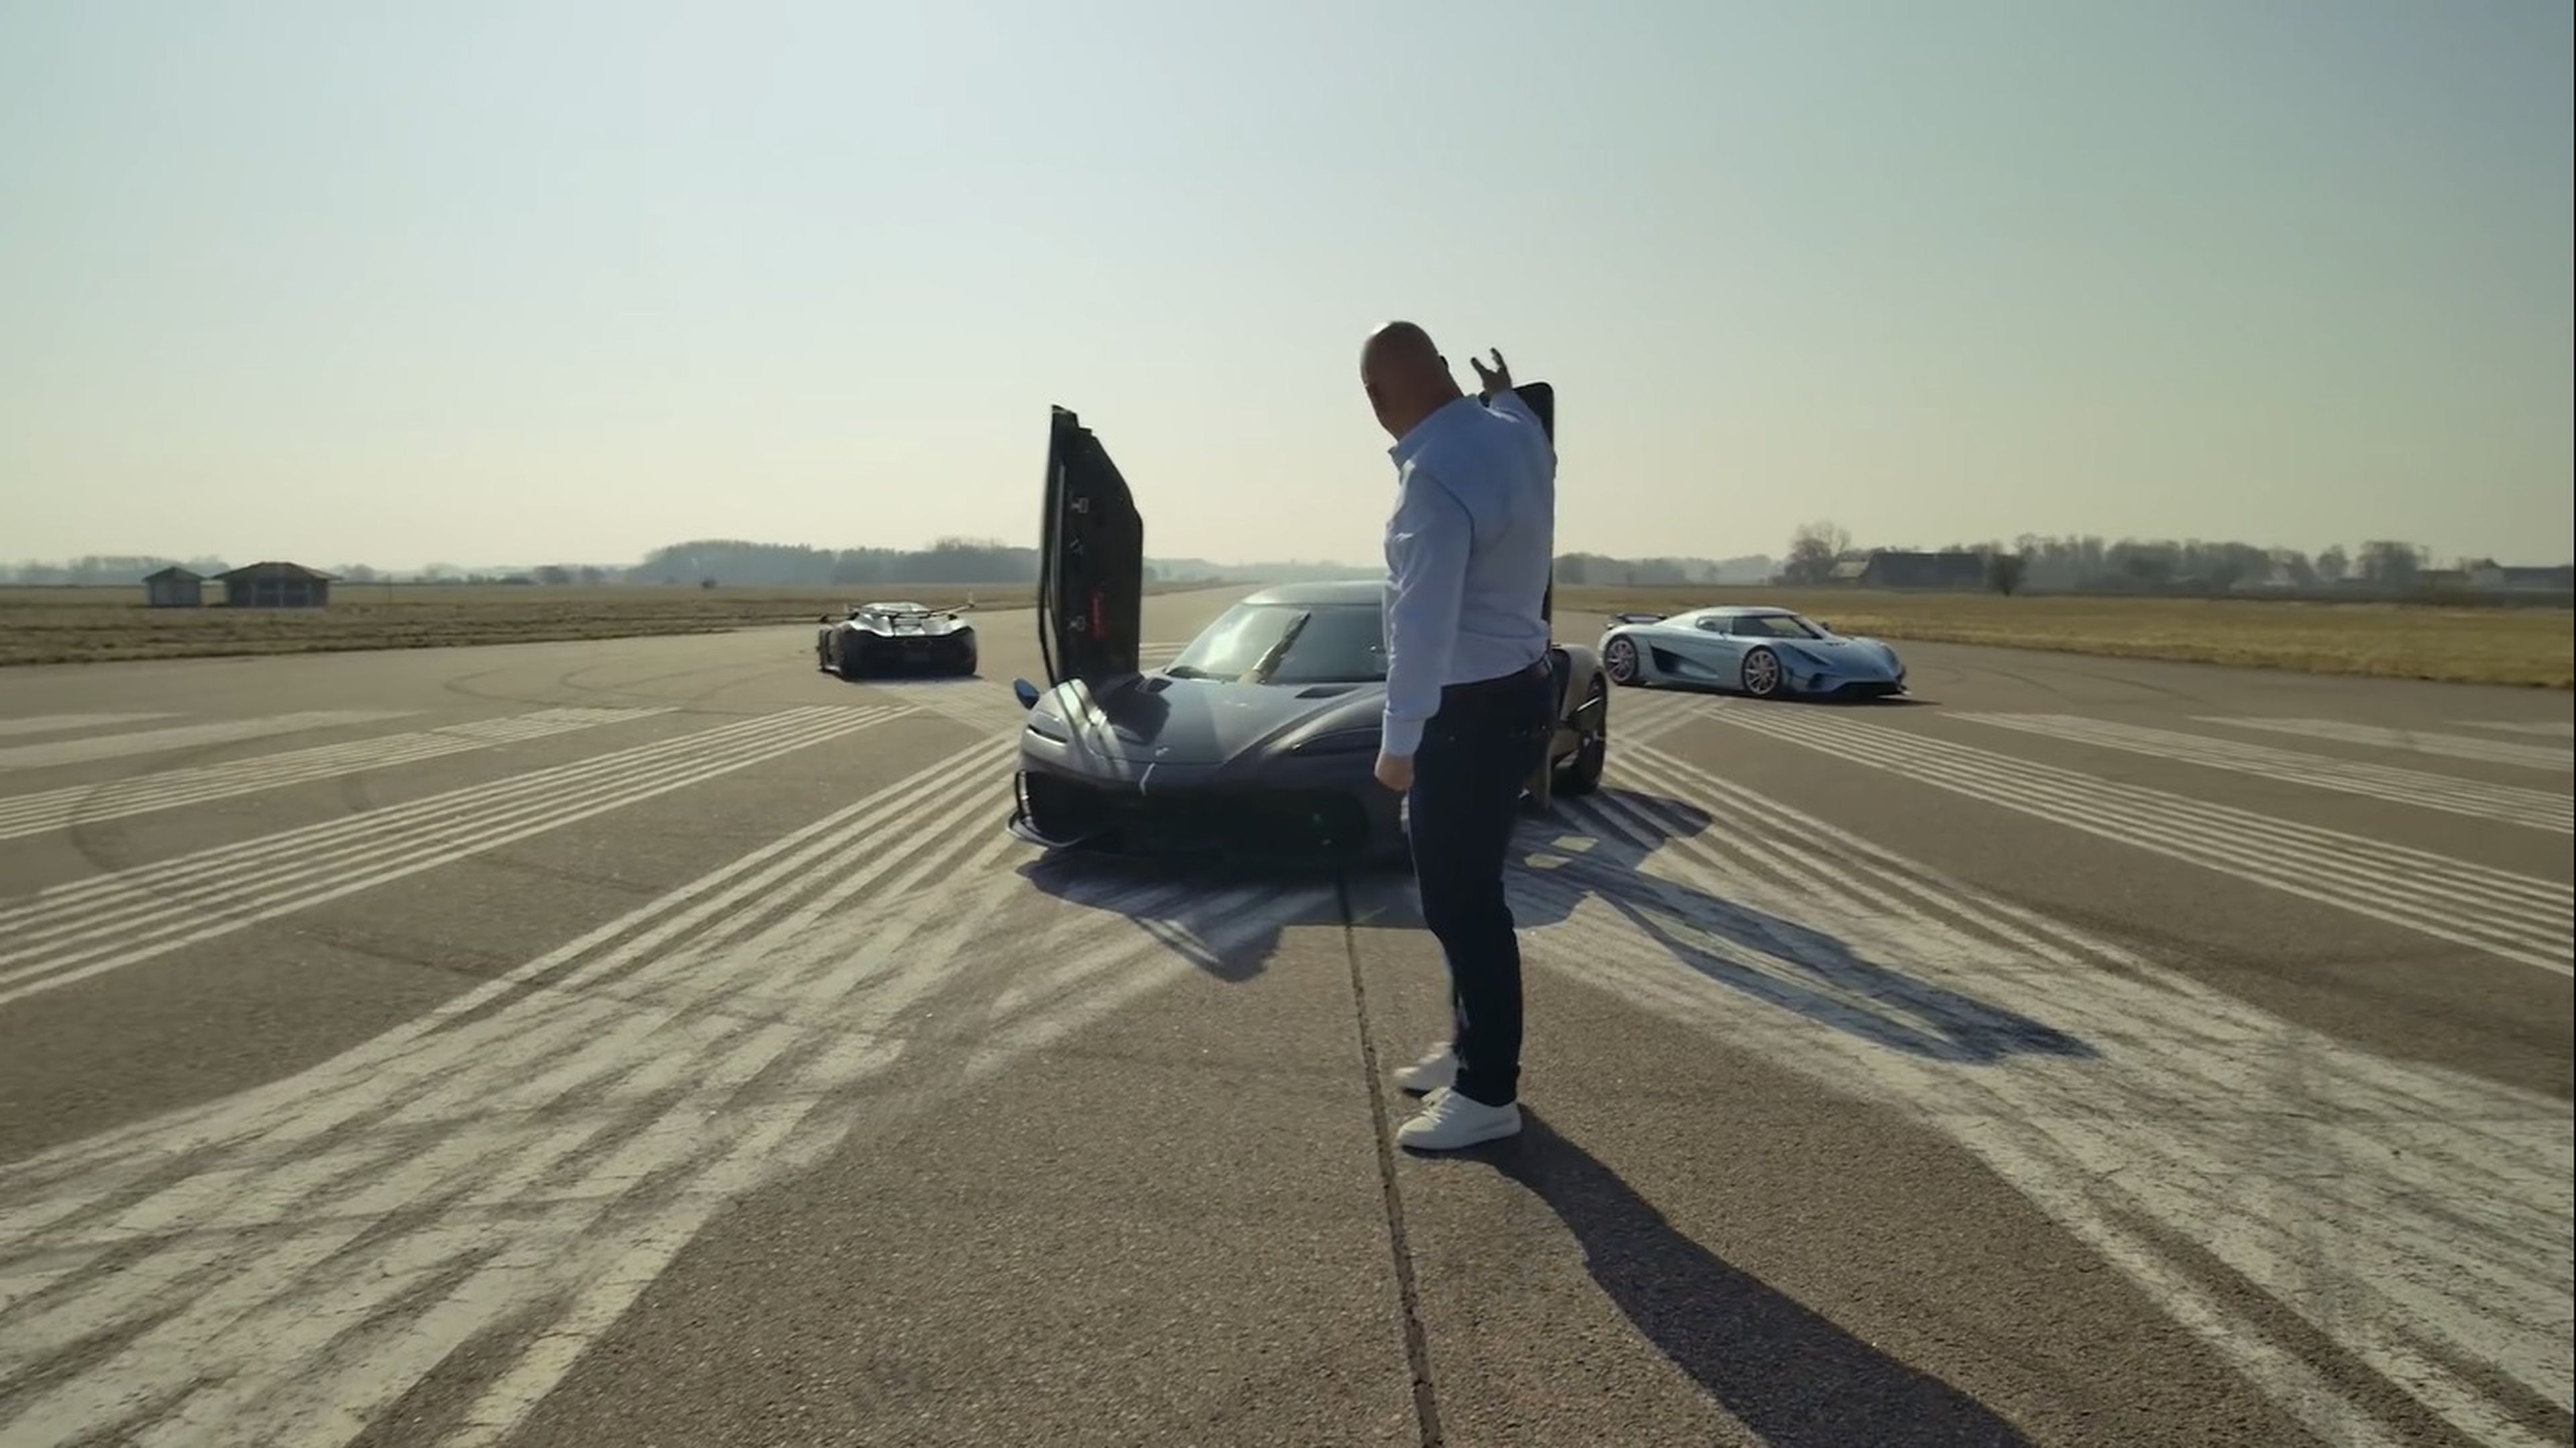 VÍDEO: Escucha el sonido del Koenigsegg Gemera, ¡qué bruto!